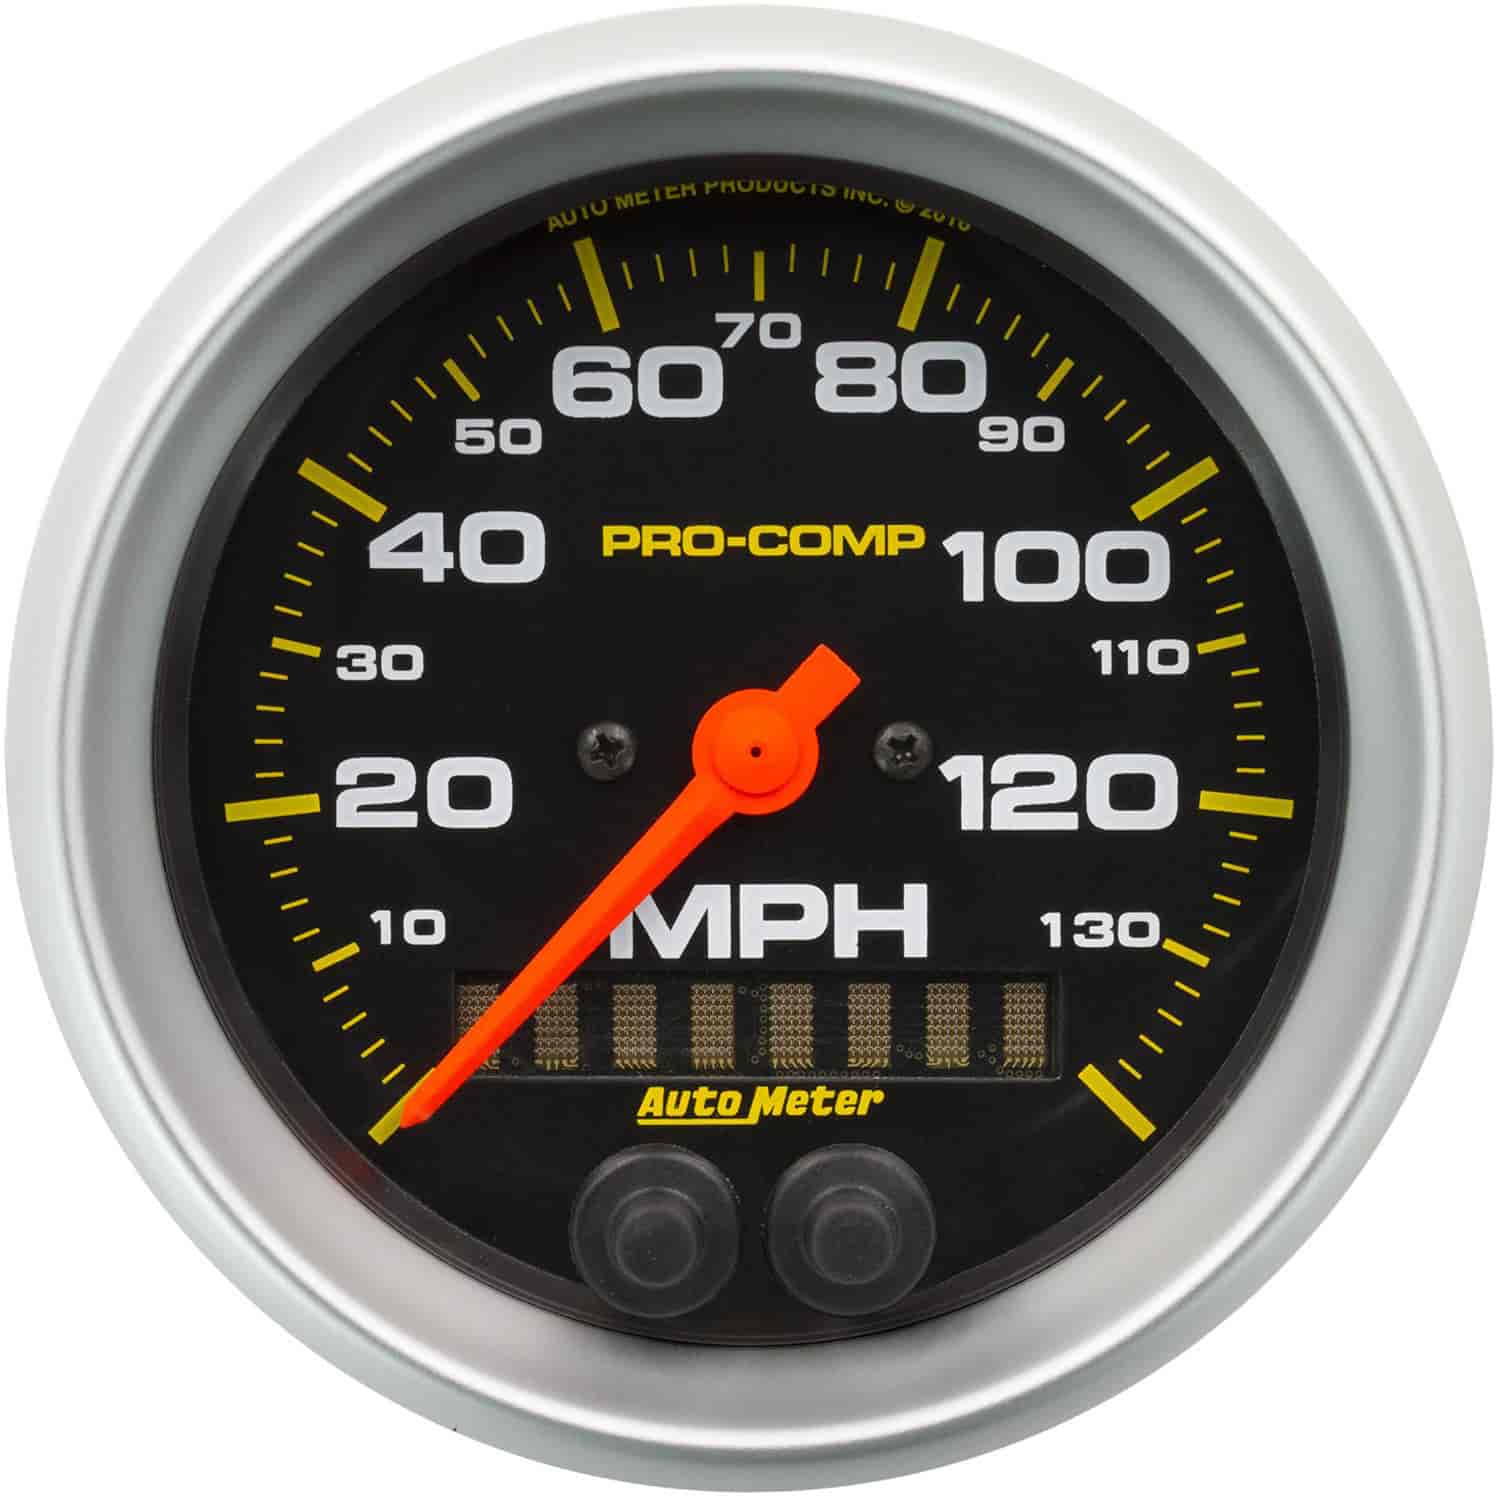 Pro-Comp In-Dash GPS Speedometer